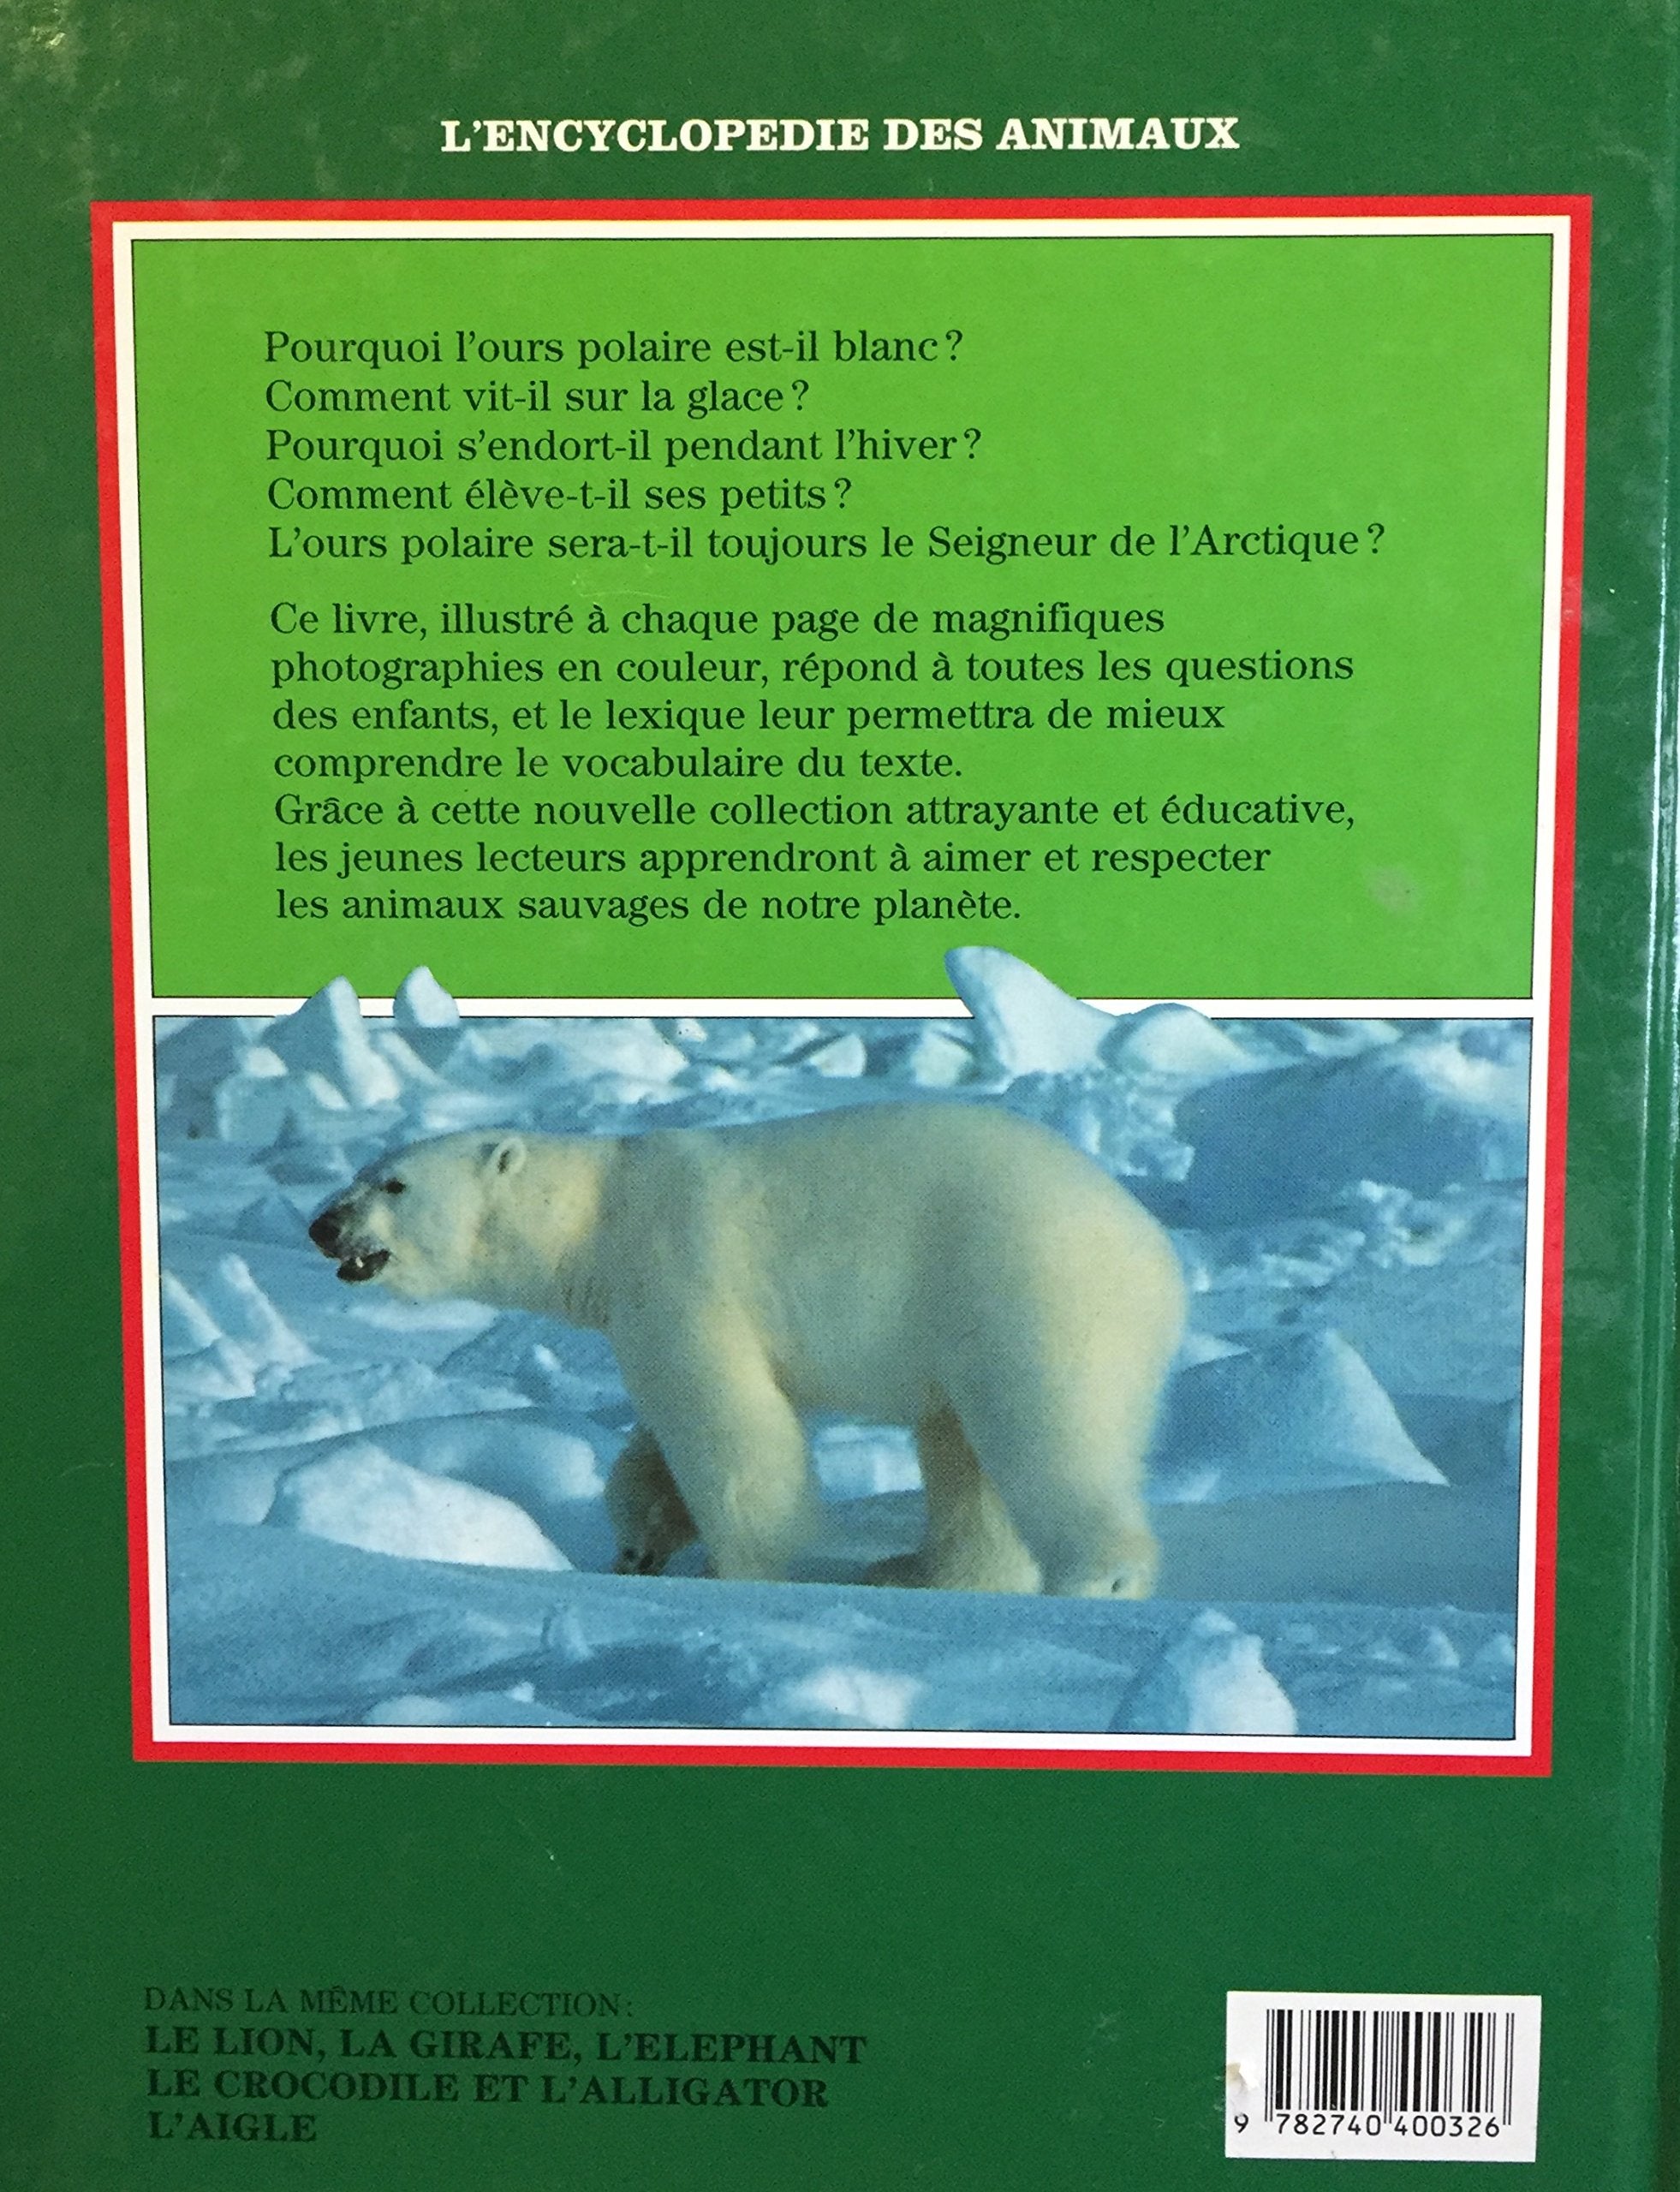 L'encyclopédie des animaux : Le grand ours blanc : L'ours polaire (Caroline Brett)